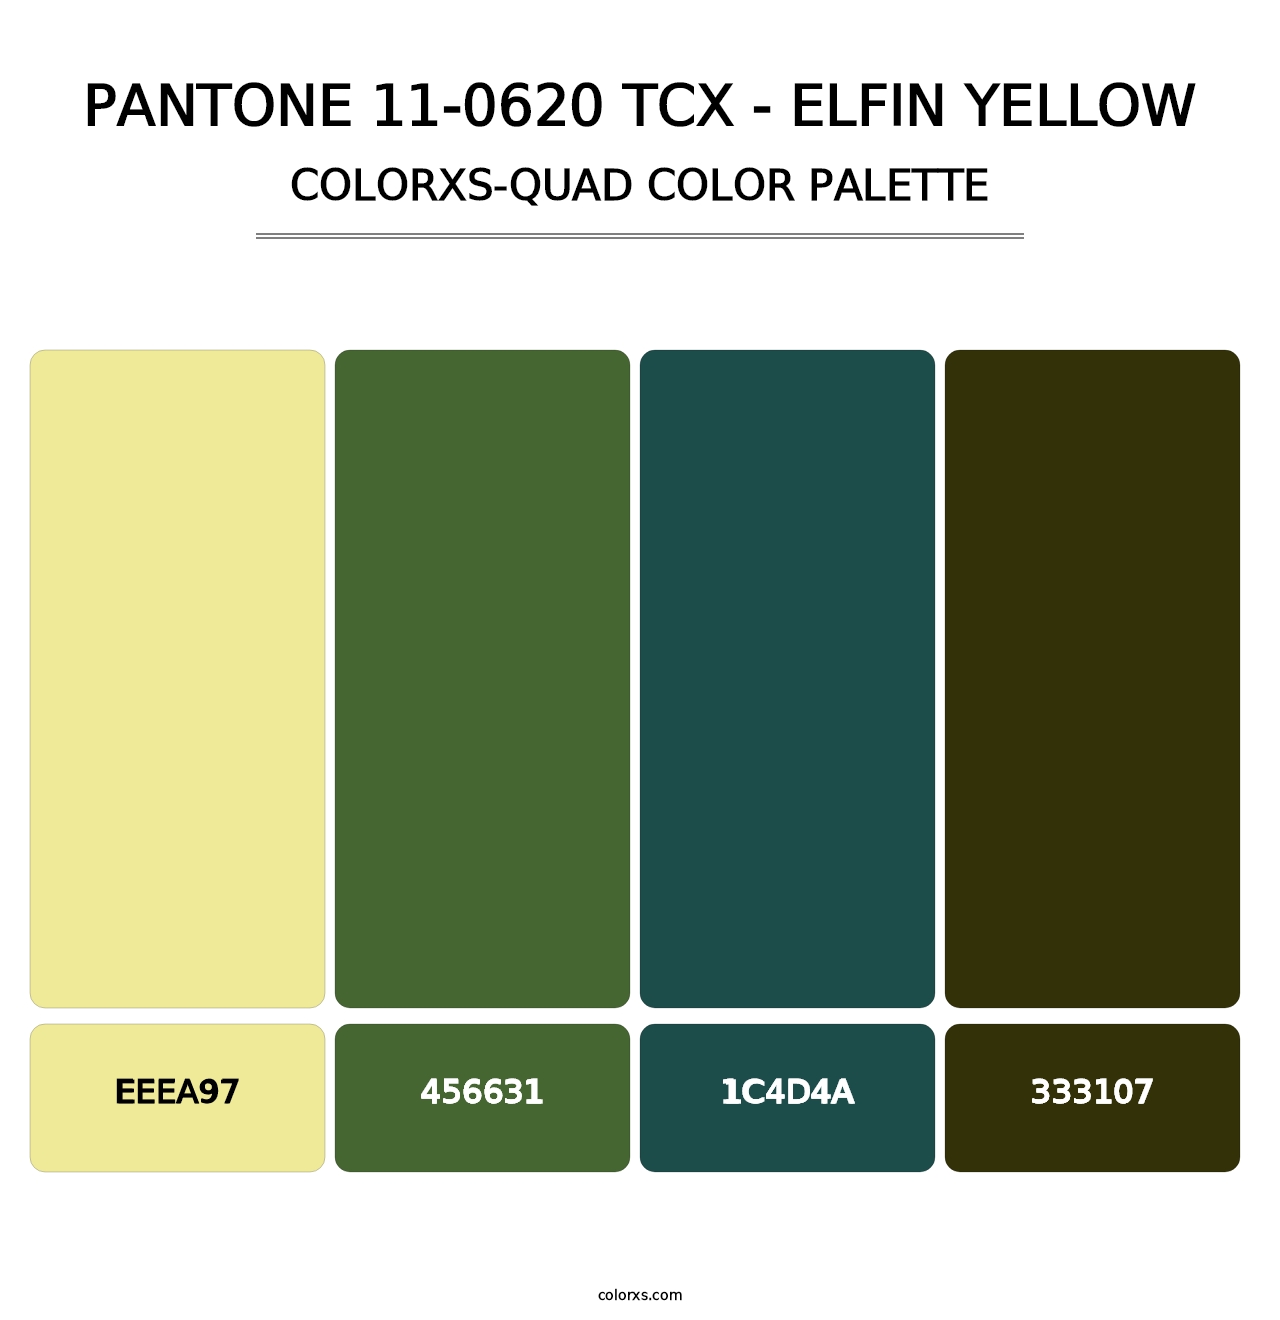 PANTONE 11-0620 TCX - Elfin Yellow - Colorxs Quad Palette